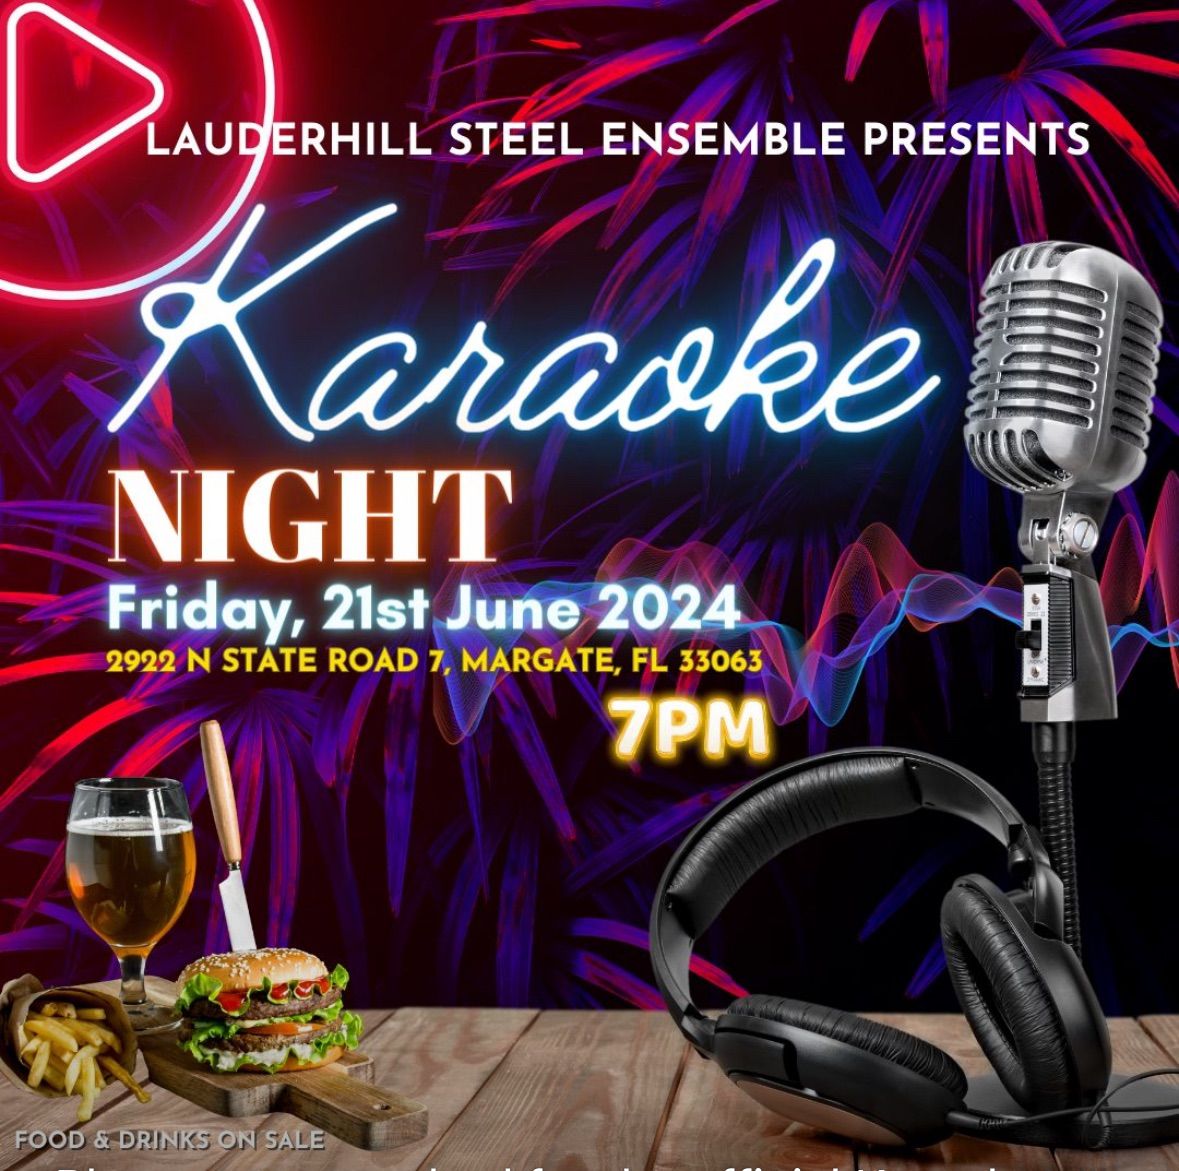 Lauderhill Steel Ensemble Karaoke night